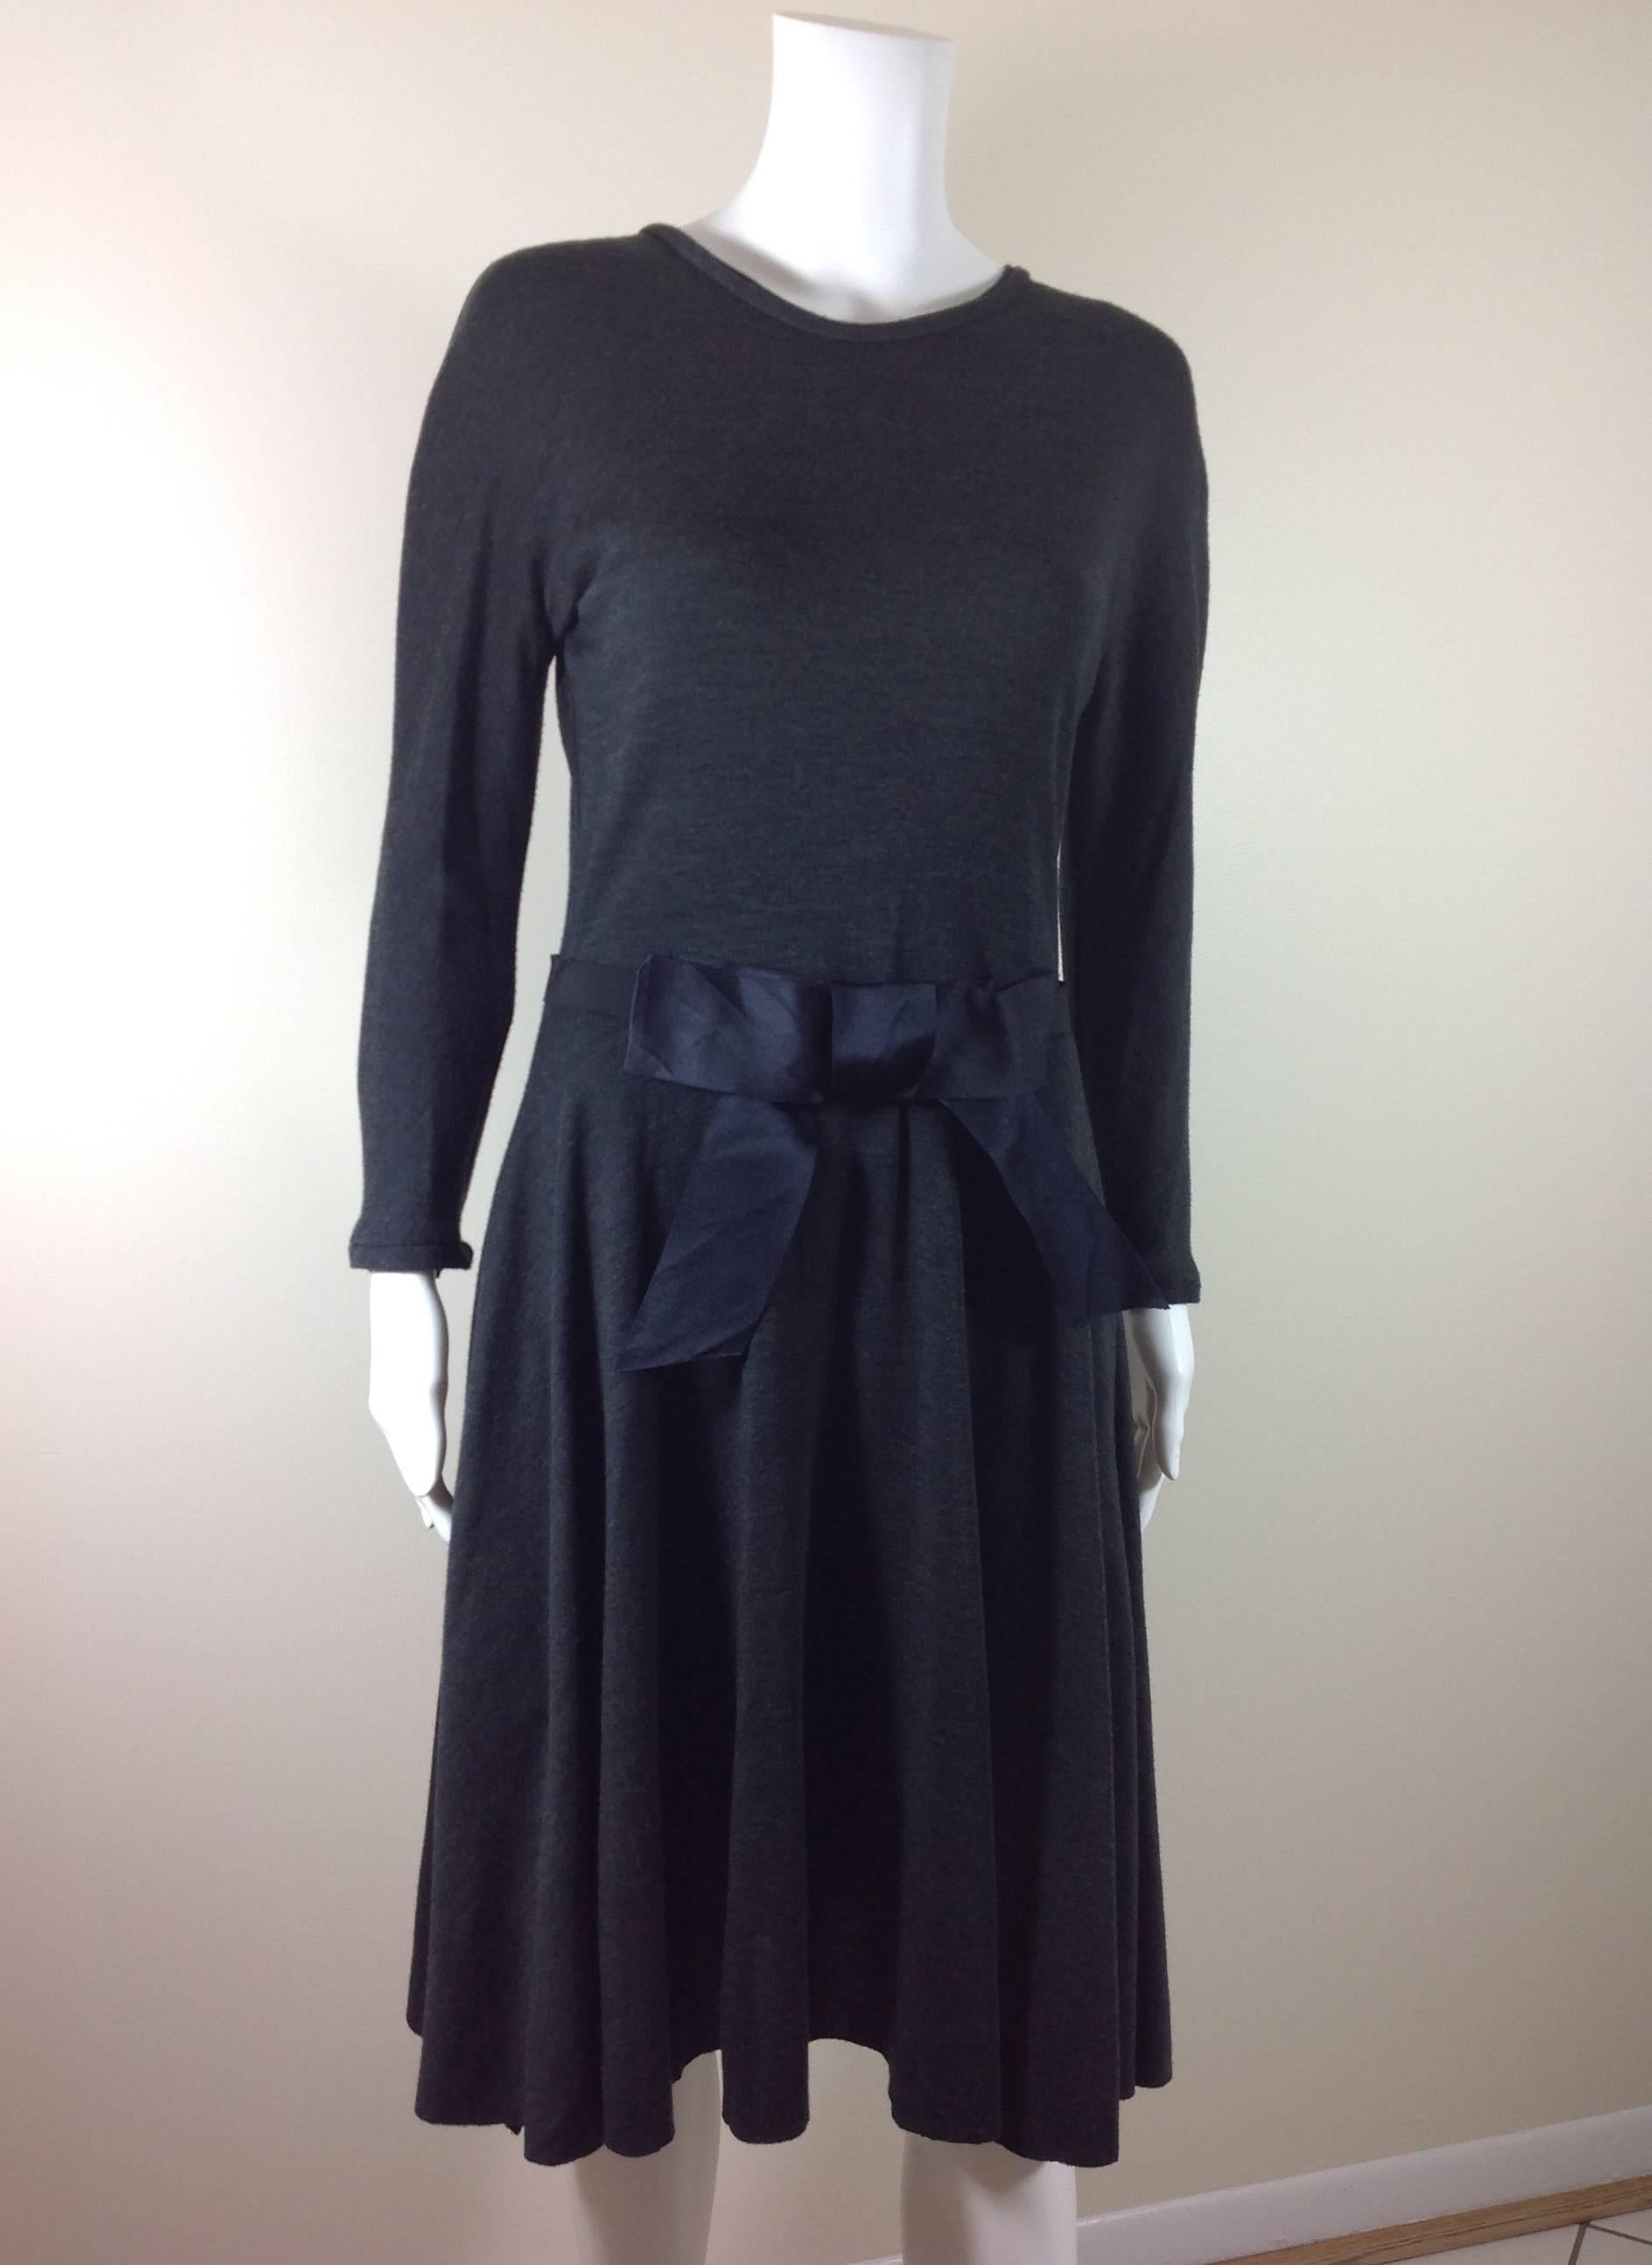 Lanvin charcoal grey jersey dress         size 38 1